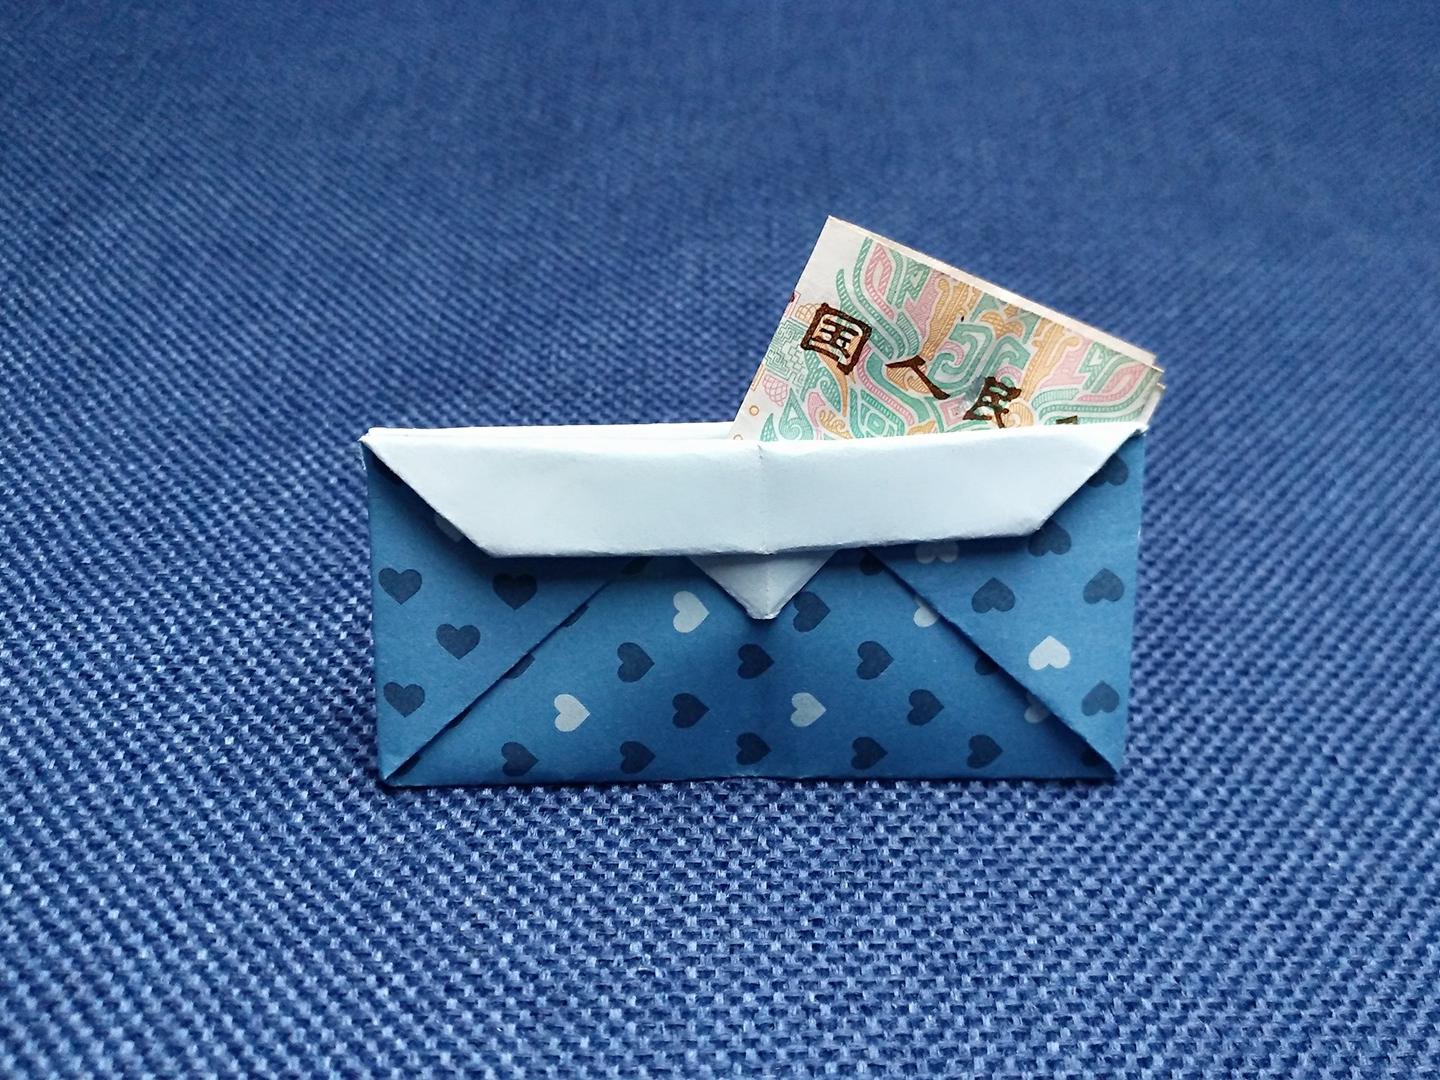 学用折纸做出实用钱包,有趣又实用